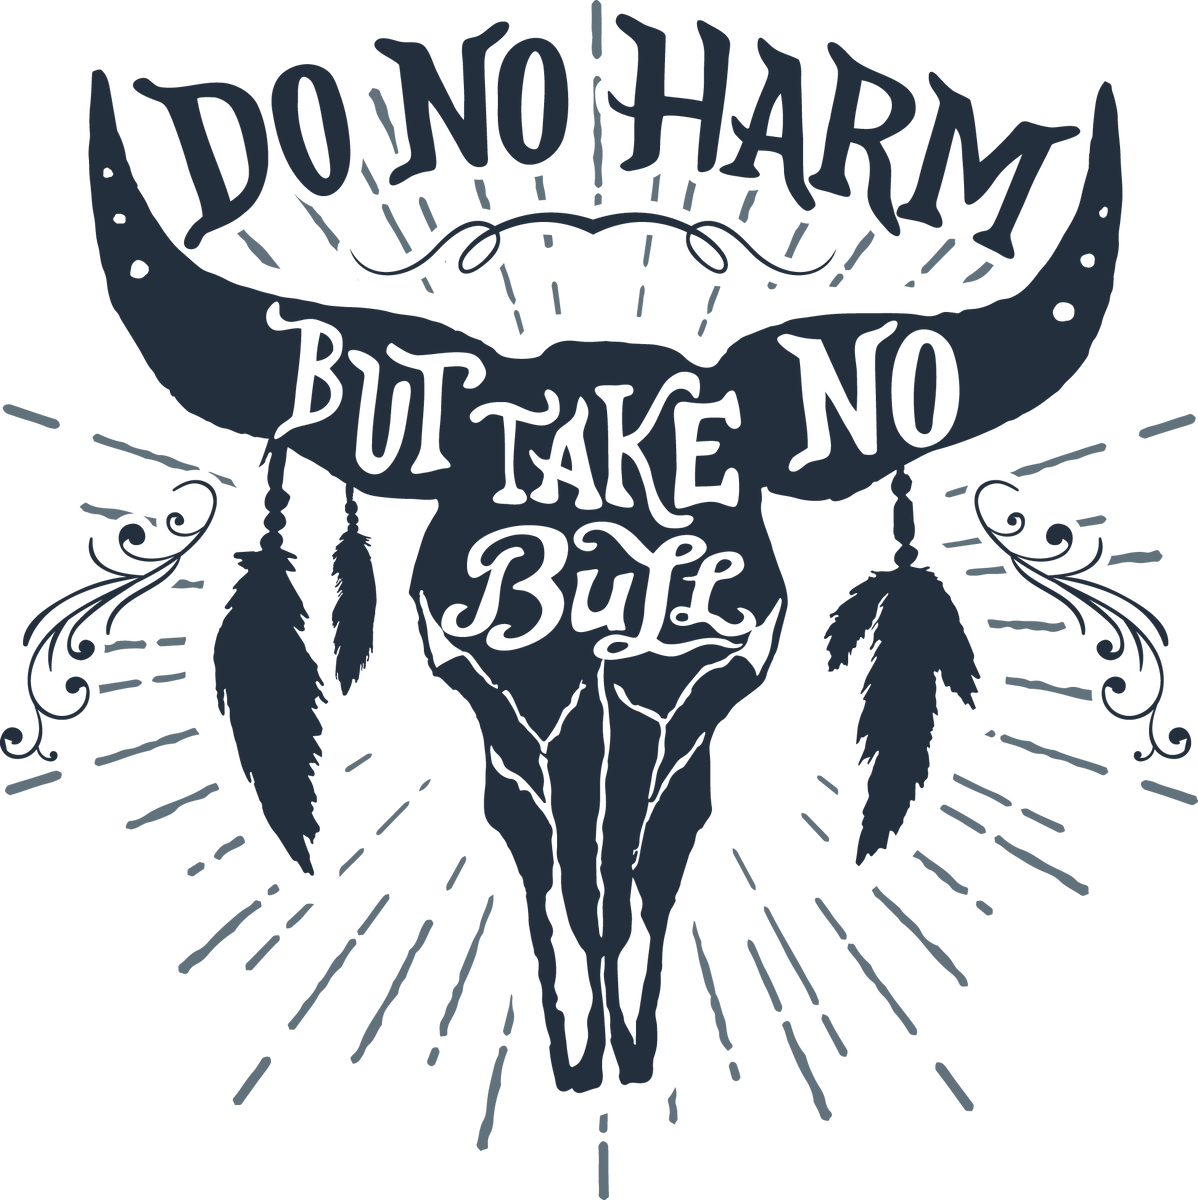 Do no harm take no bull - Transfer